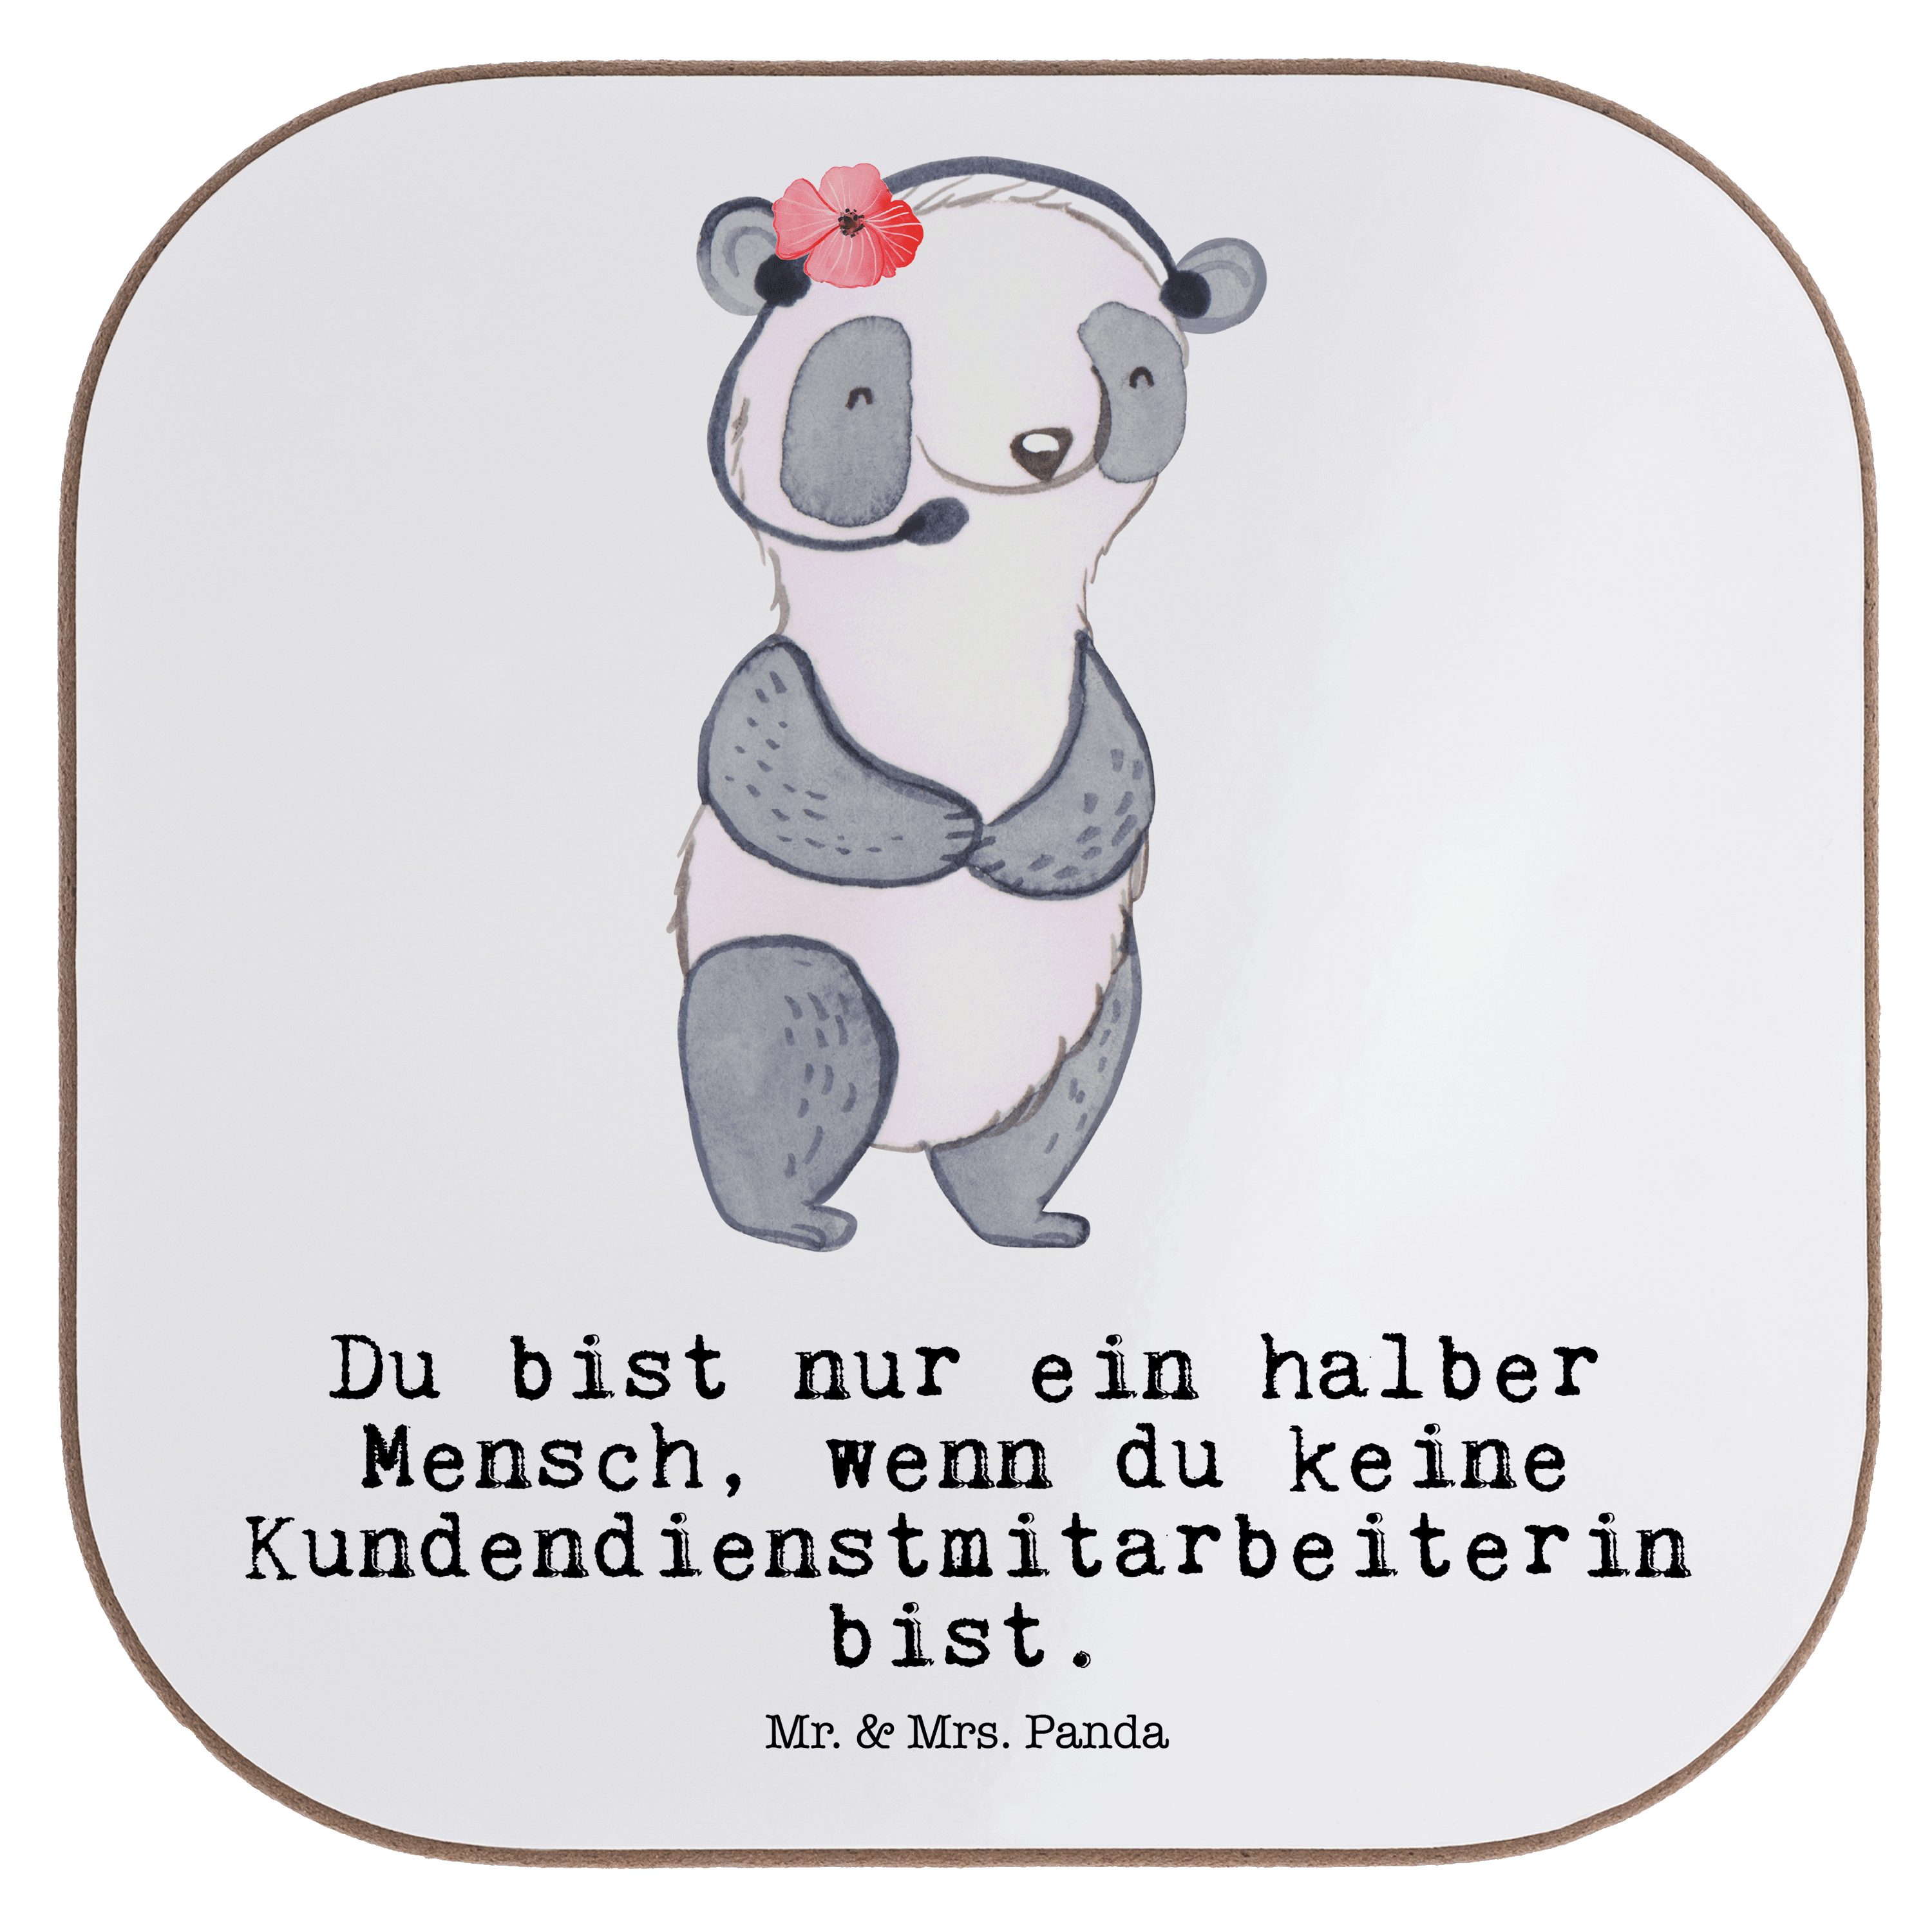 Mr. & Mrs. Panda Getränkeuntersetzer Kundendienstmitarbeiterin mit Herz - Weiß - Geschenk, Bierdeckel, Kol, 1-tlg.